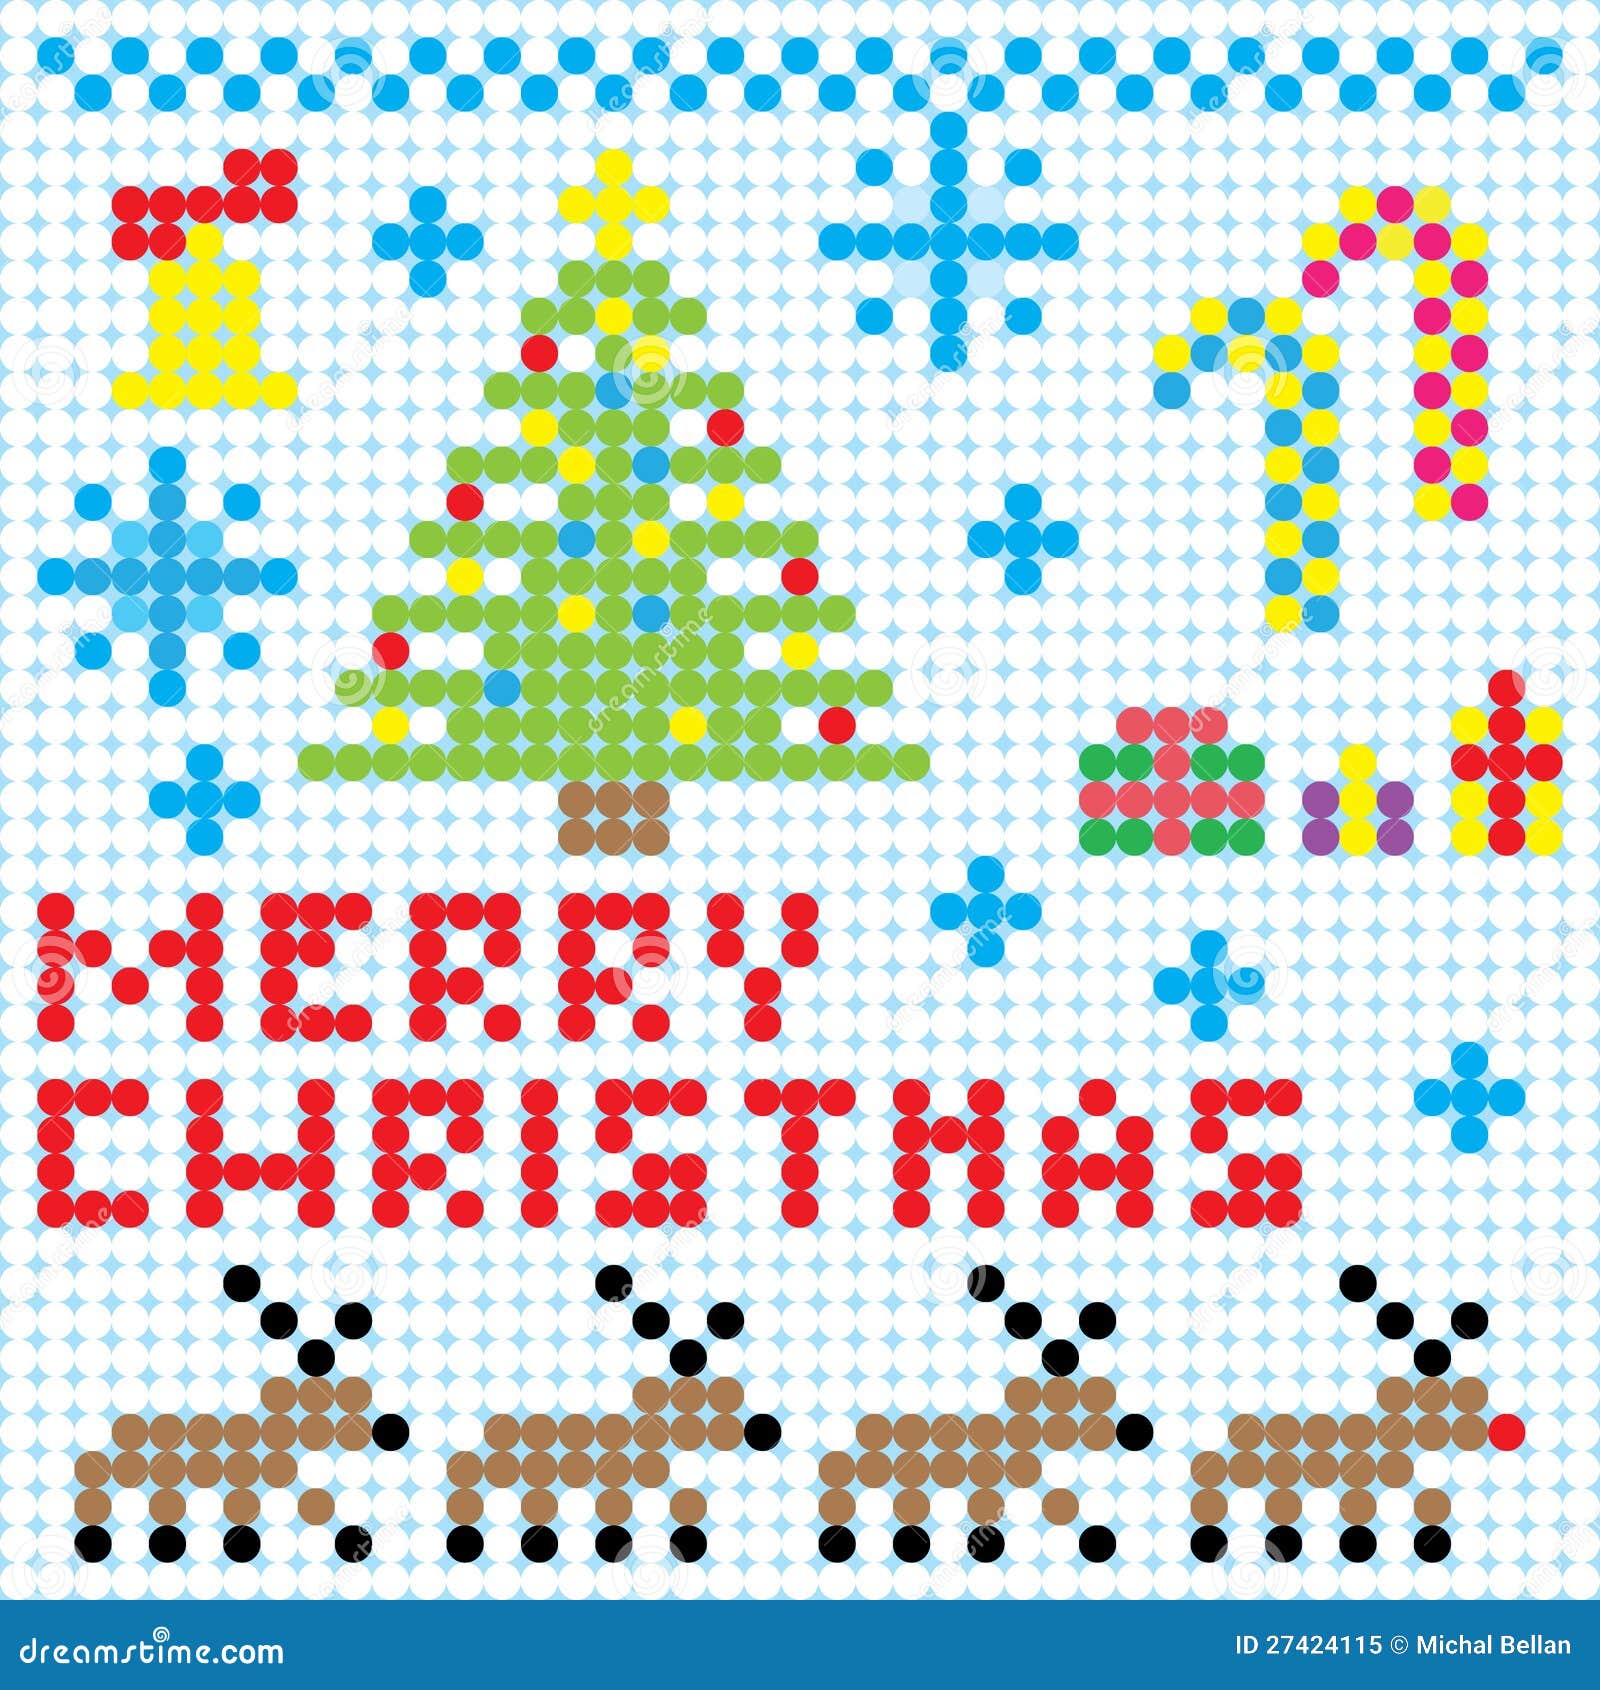 Art De Pixel De Noël De Vecteur Illustration De Vecteur